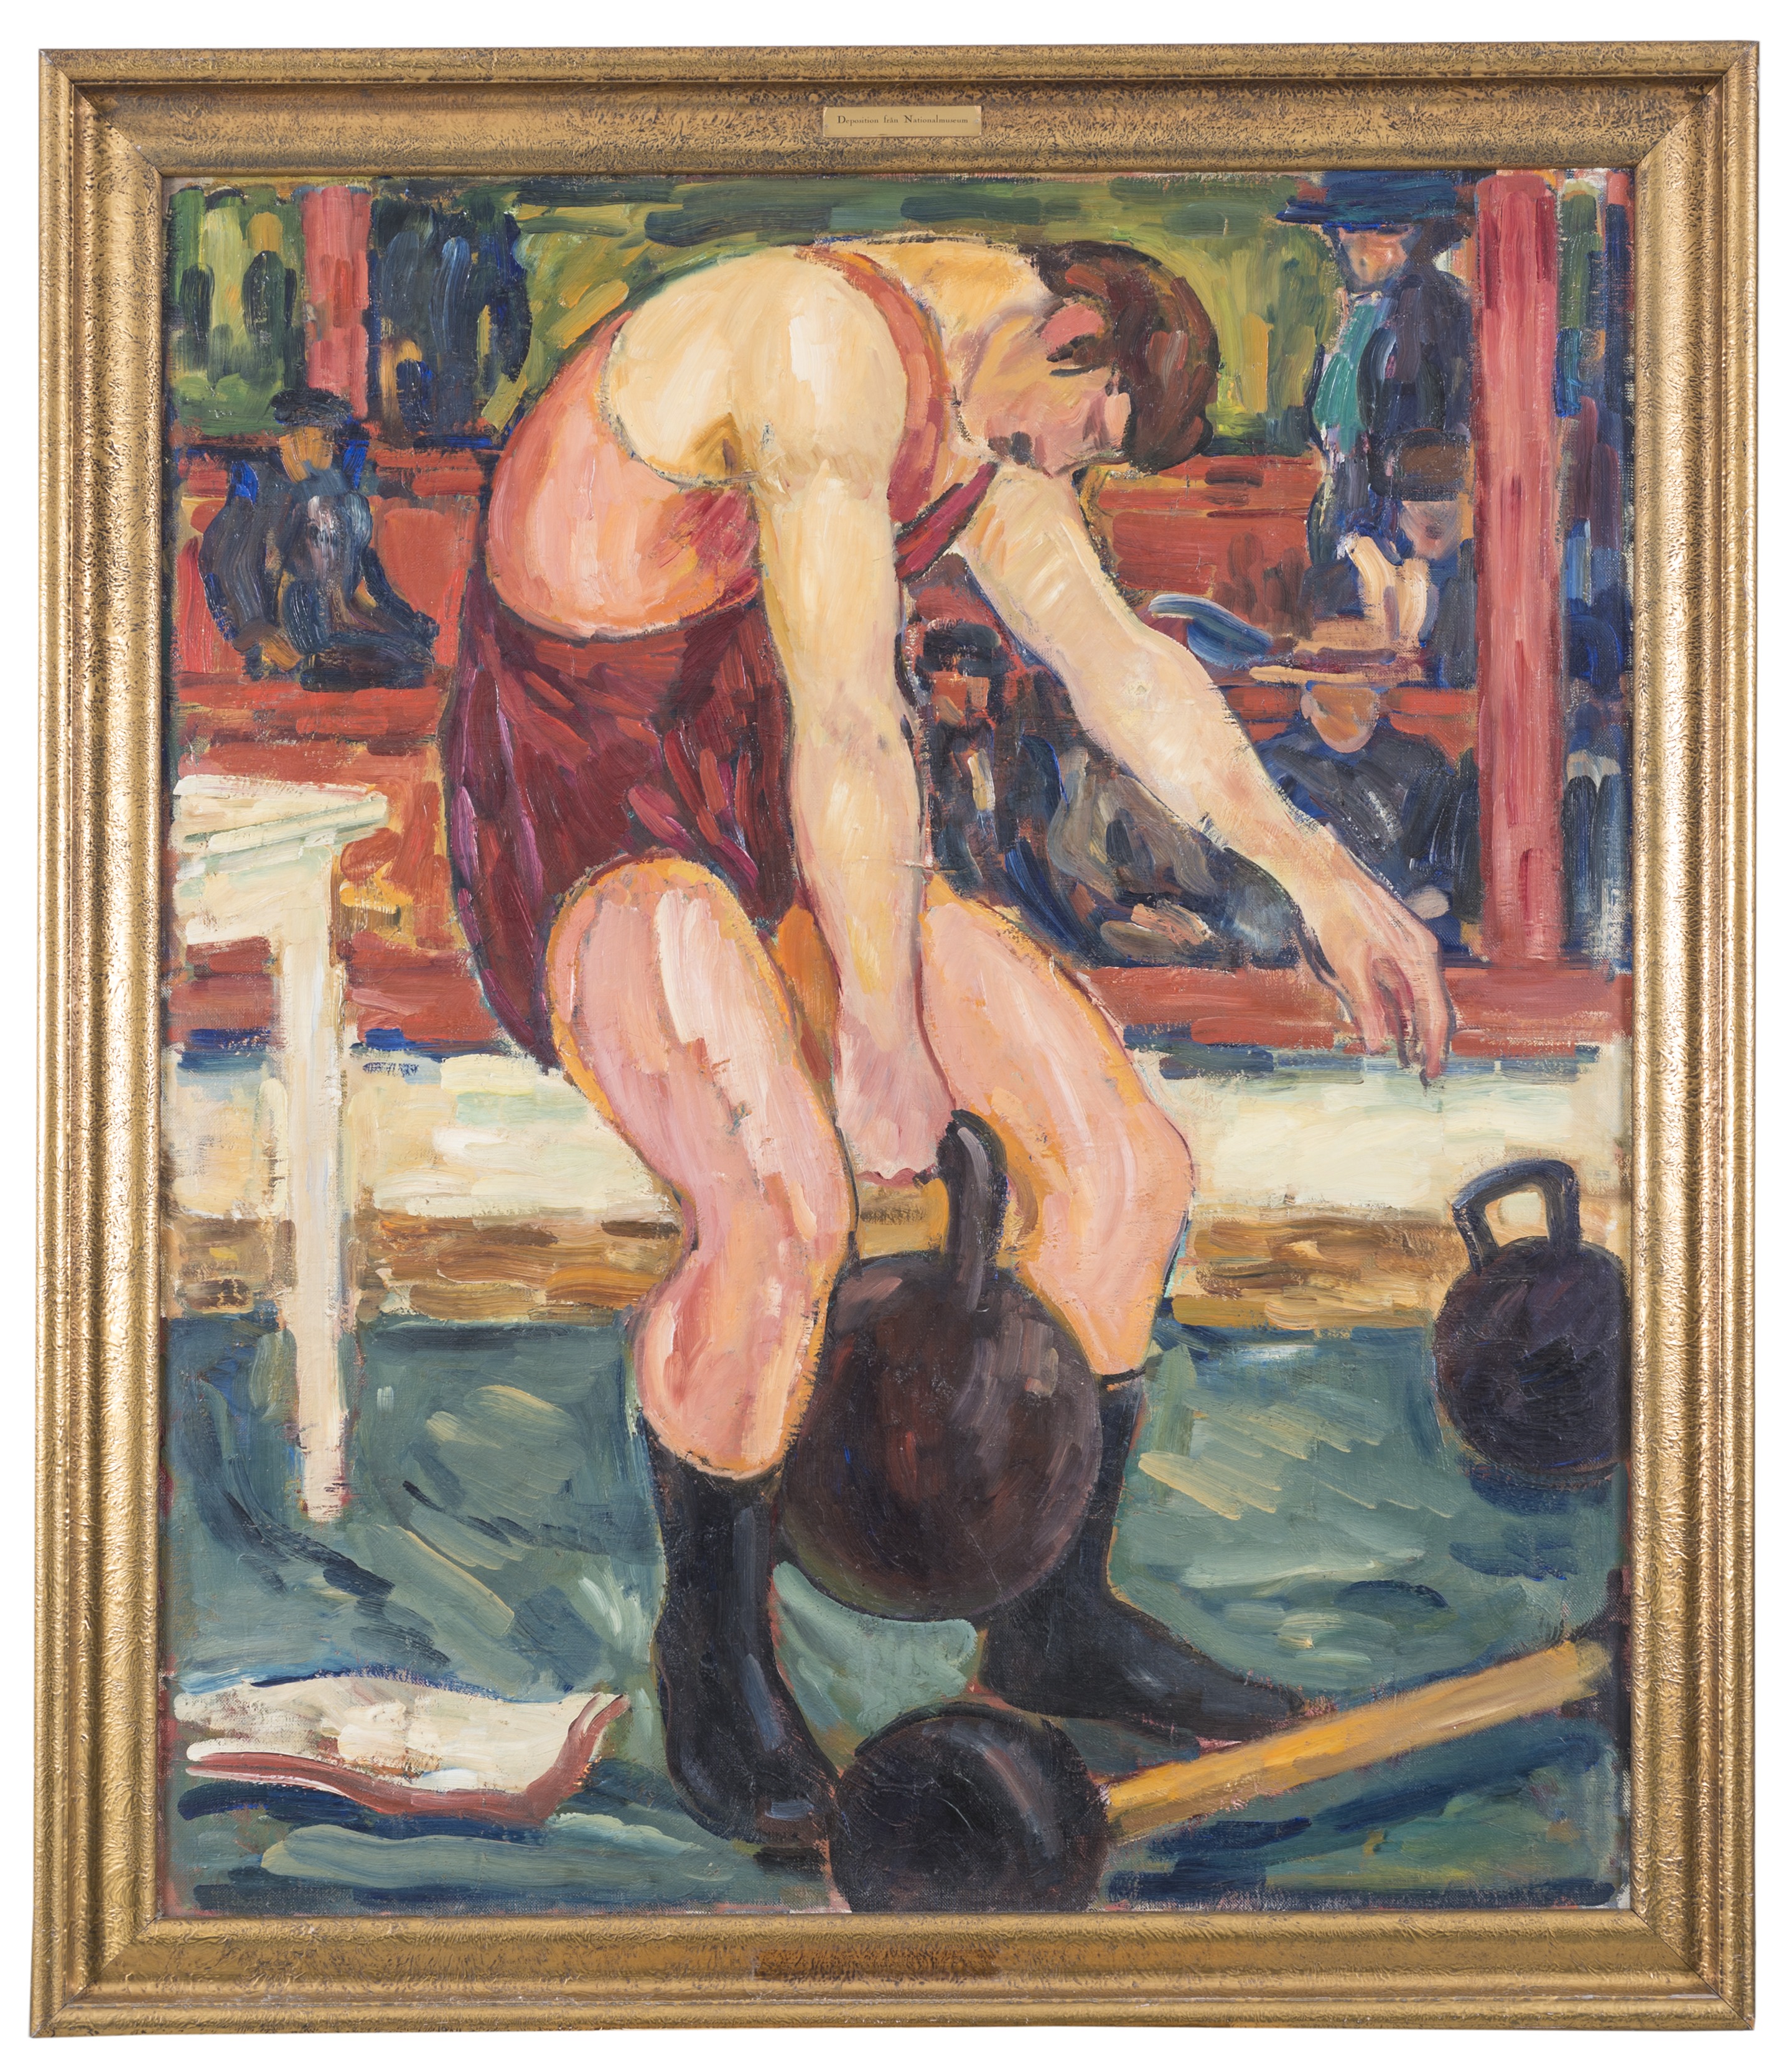 Sportivi by Gösta von Hennigs - înainte de 1941 - 141 x 119 cm 